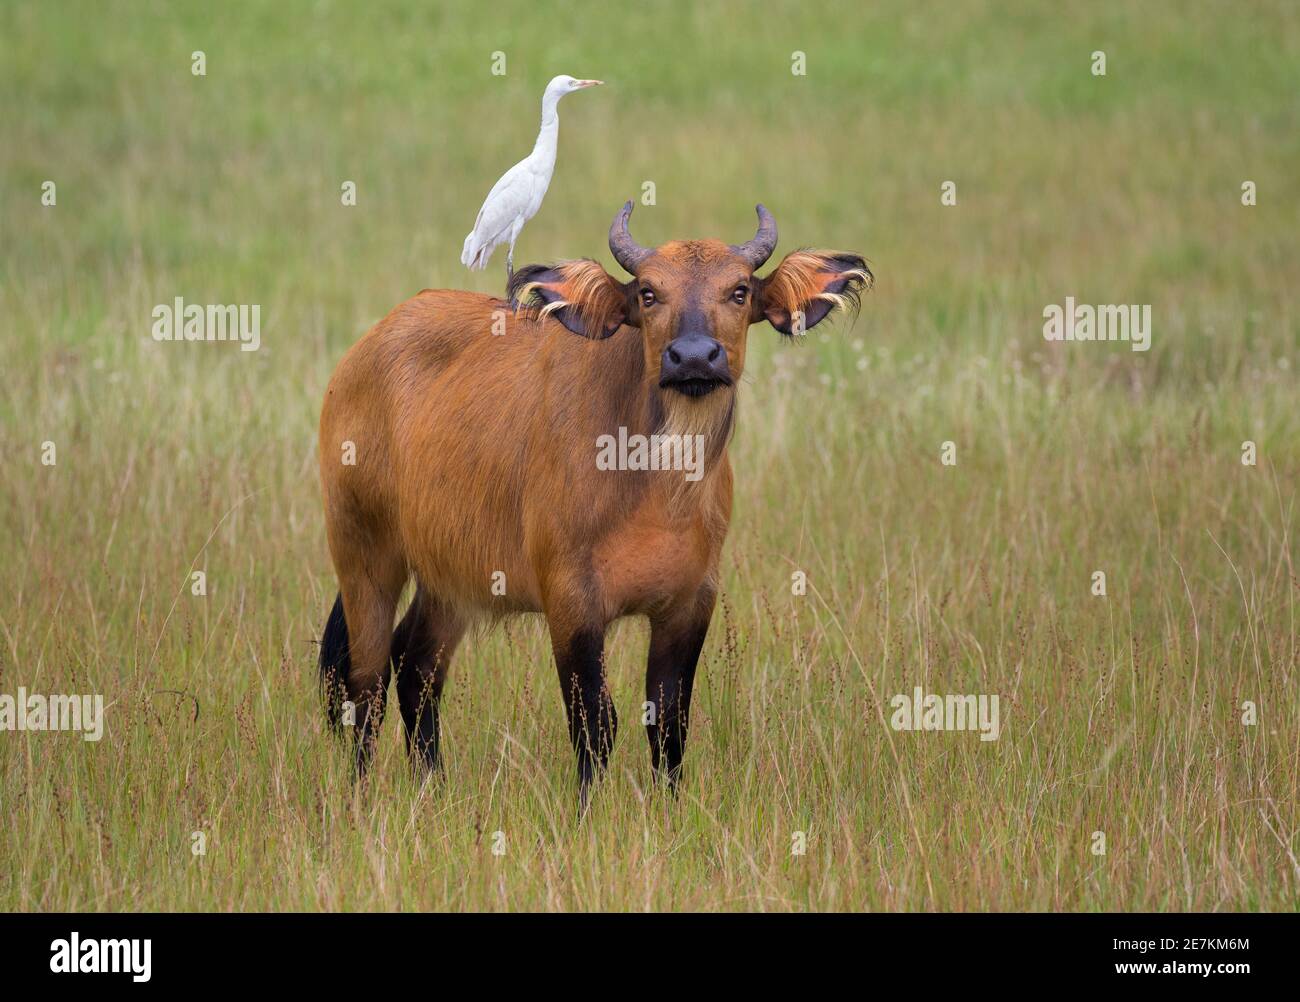 Bosque Africano o Búfalo de Dwarf (Syncerus caffer nanus) con ganado Egret (Bubulcus ibis) en la espalda, Parque Nacional Loango, Gabón, África central. Foto de stock